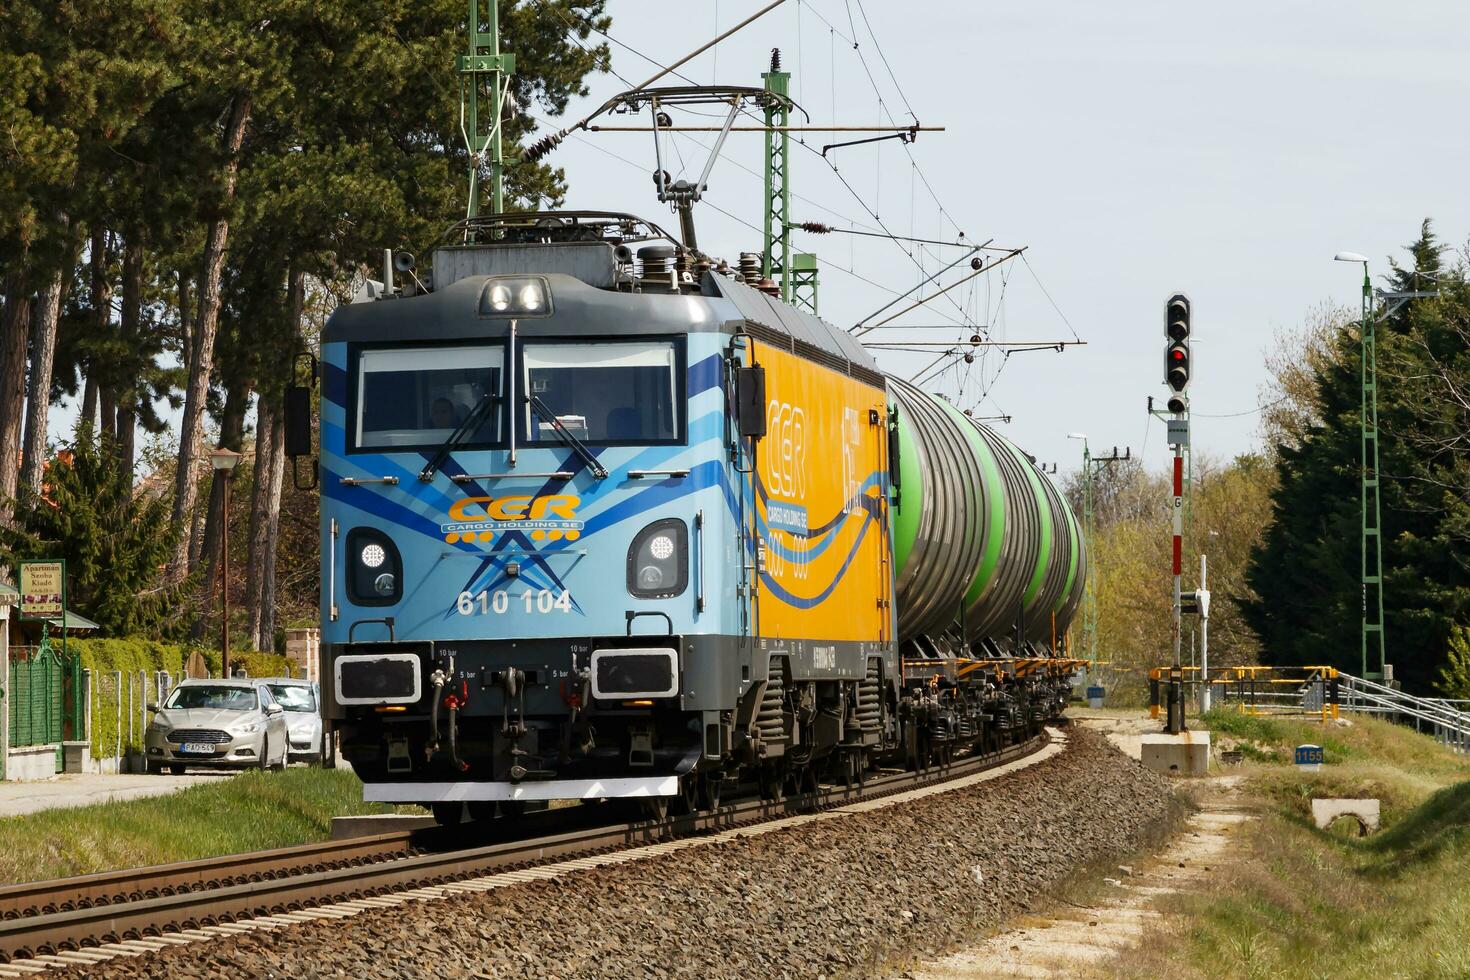 internacional tren transporte. carga carga tren vagón a tren estación. global transporte y envío. foto